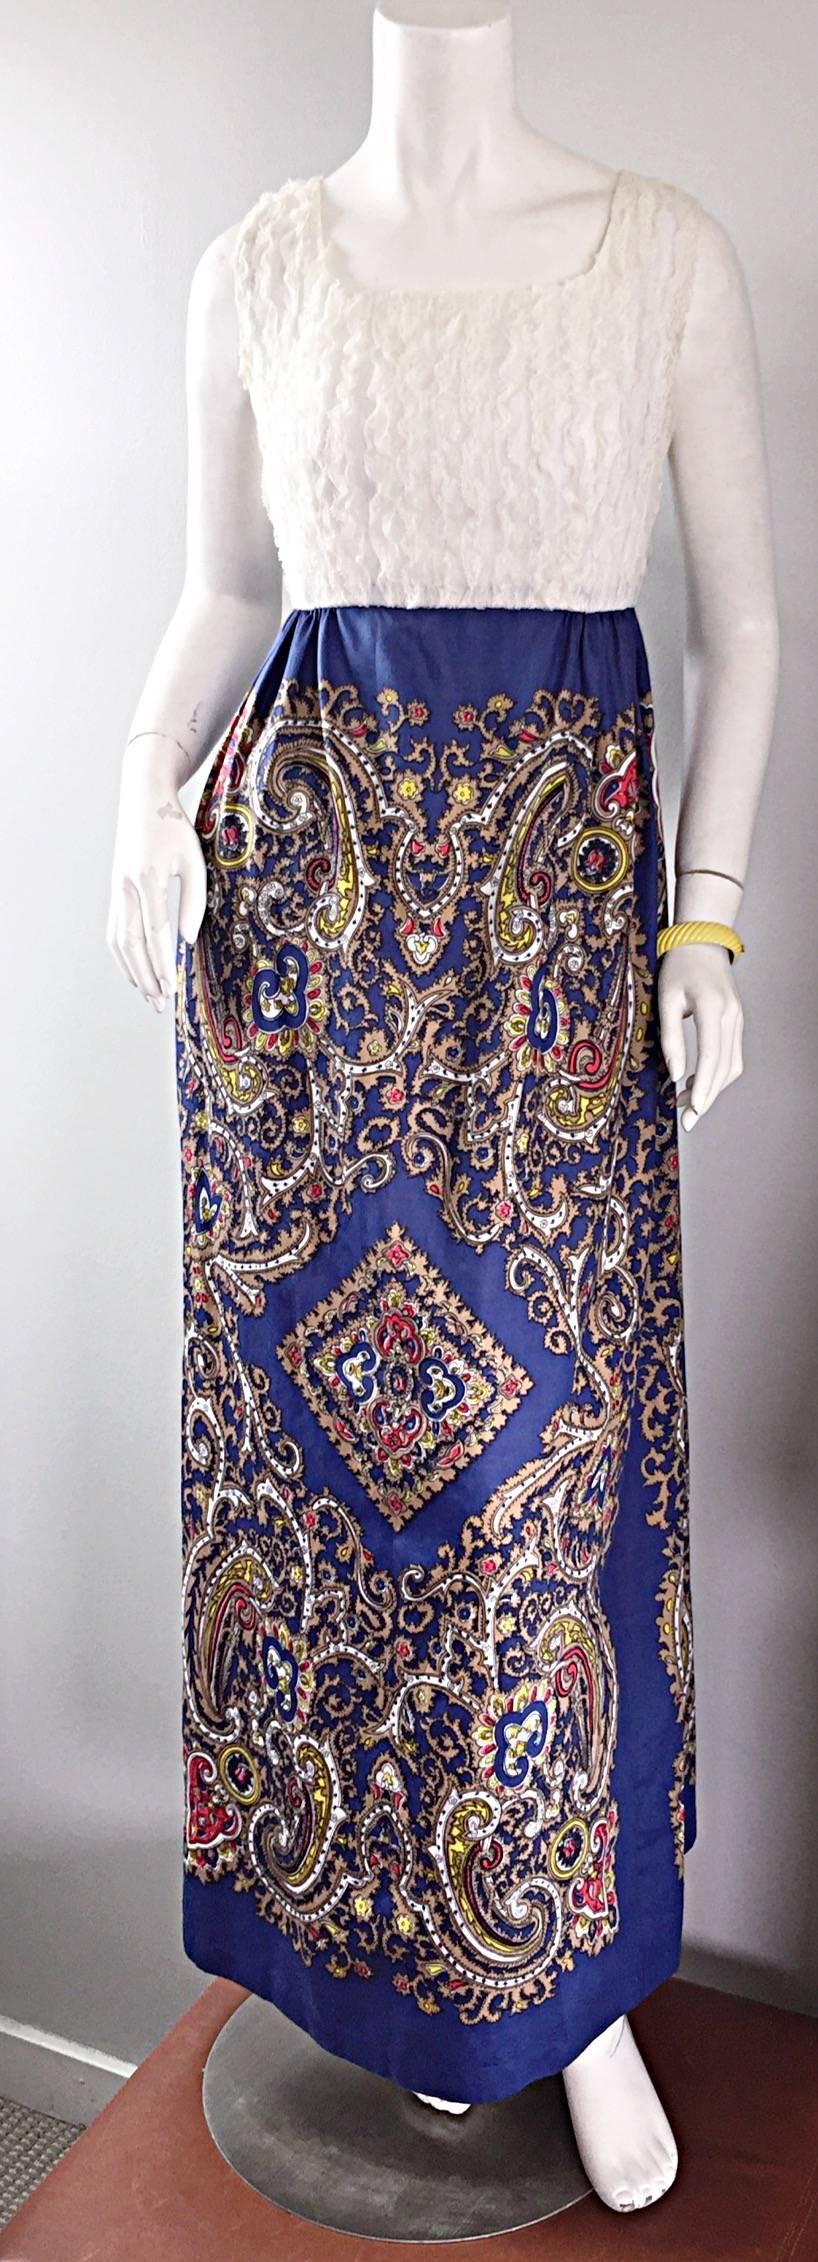 Atemberaubendes Kleid im Bohème-Stil der 1970er Jahre! Das Kleid besteht aus weißer französischer Seidenspitze, die vertikal gestaffelt ist, und einem wunderschönen Rock aus blauer Baumwolle mit Paisley-Siebdruck. Der Stoff dieses Schmuckstücks ist